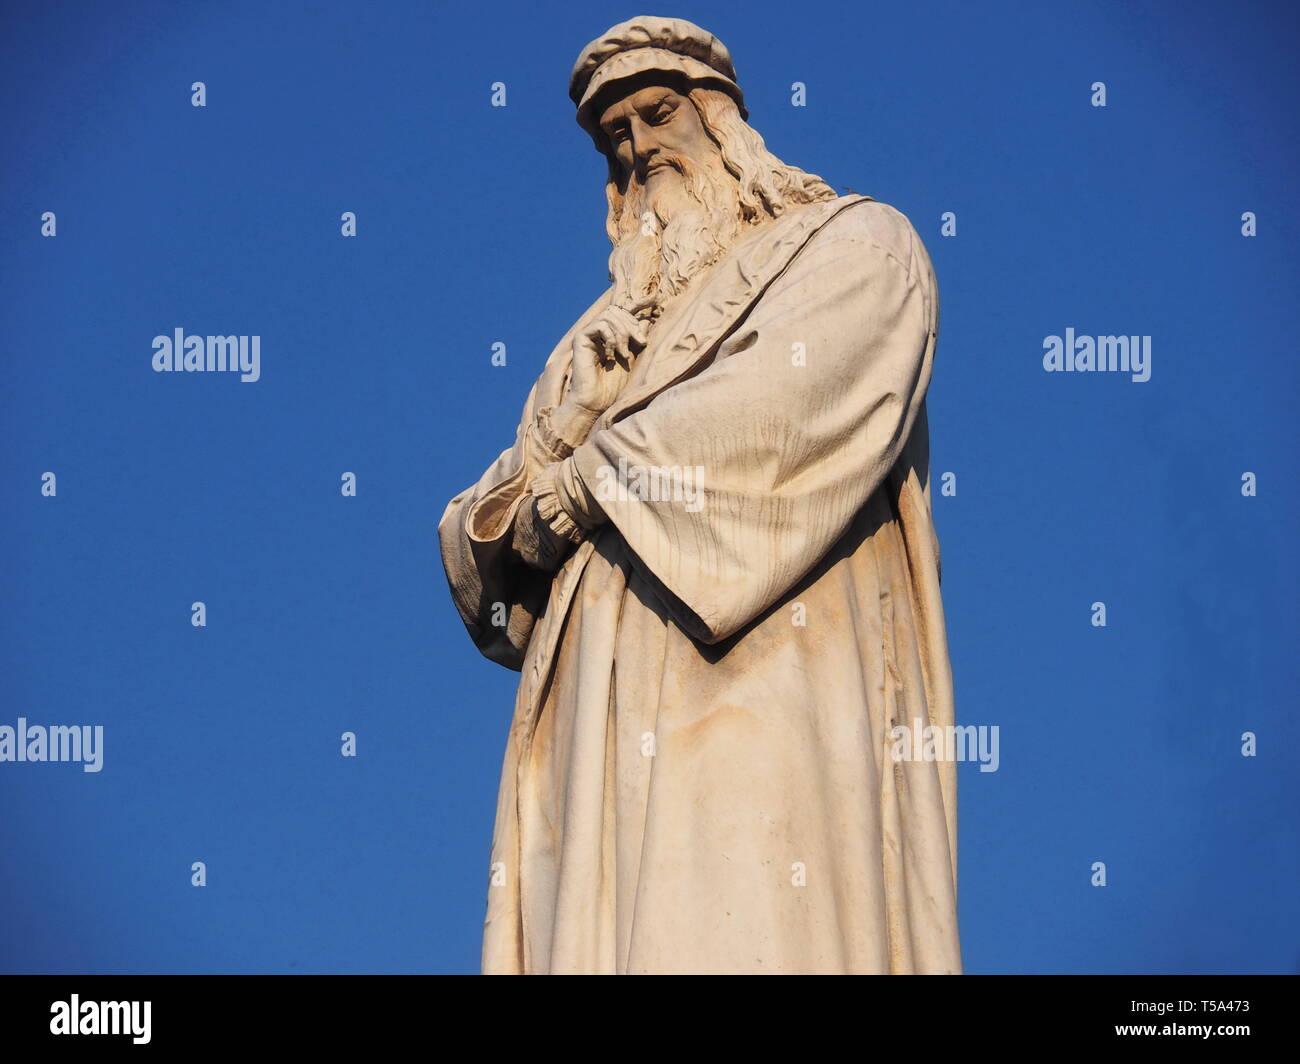 Leonardo Da Vinci sculpture in Piazza della Scala square, Milan. Stock Photo